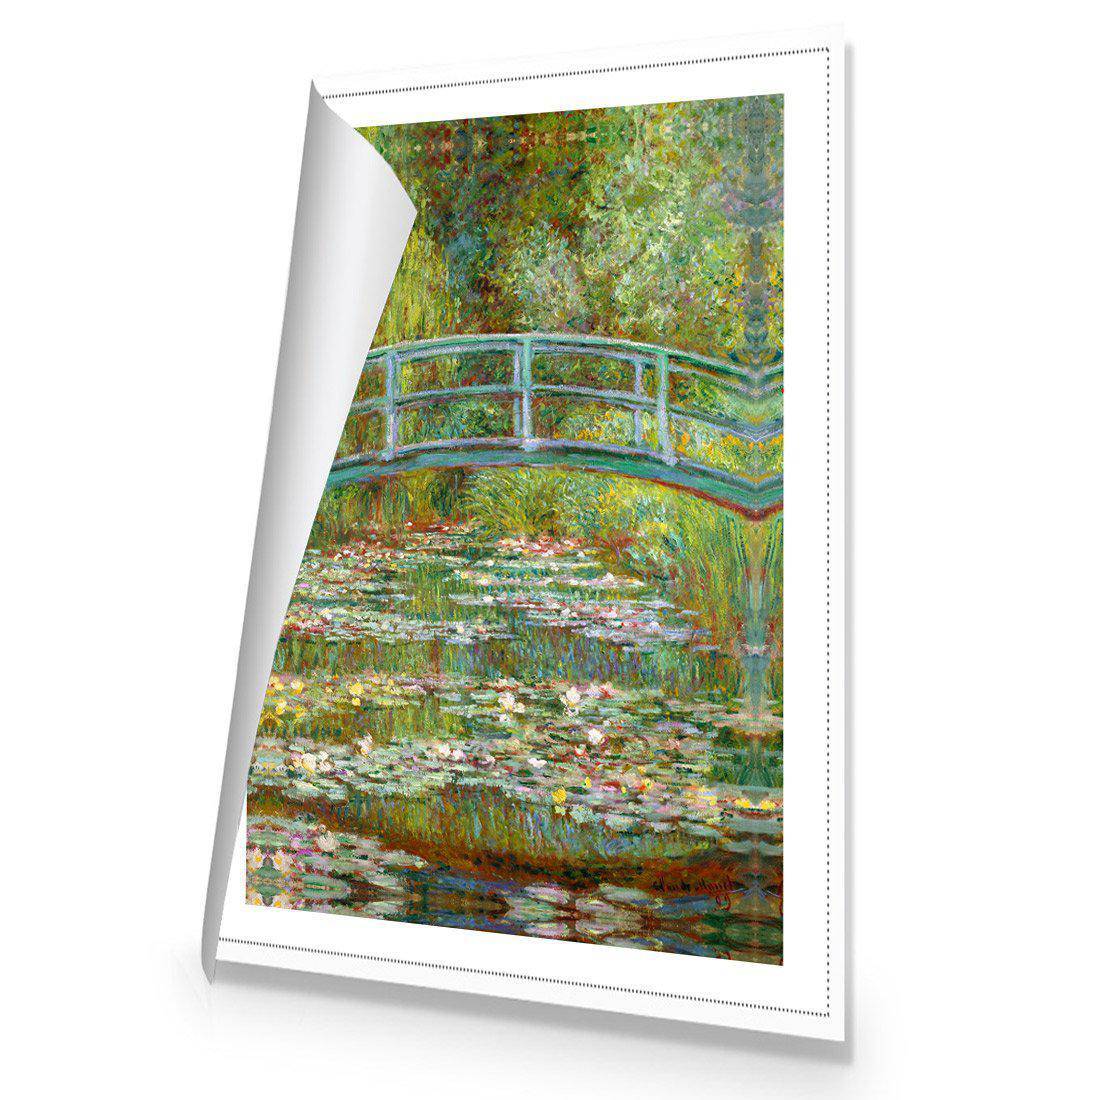 Bridge Over Rose Pond - Monet Canvas Art-Canvas-Wall Art Designs-45x30cm-Rolled Canvas-Wall Art Designs